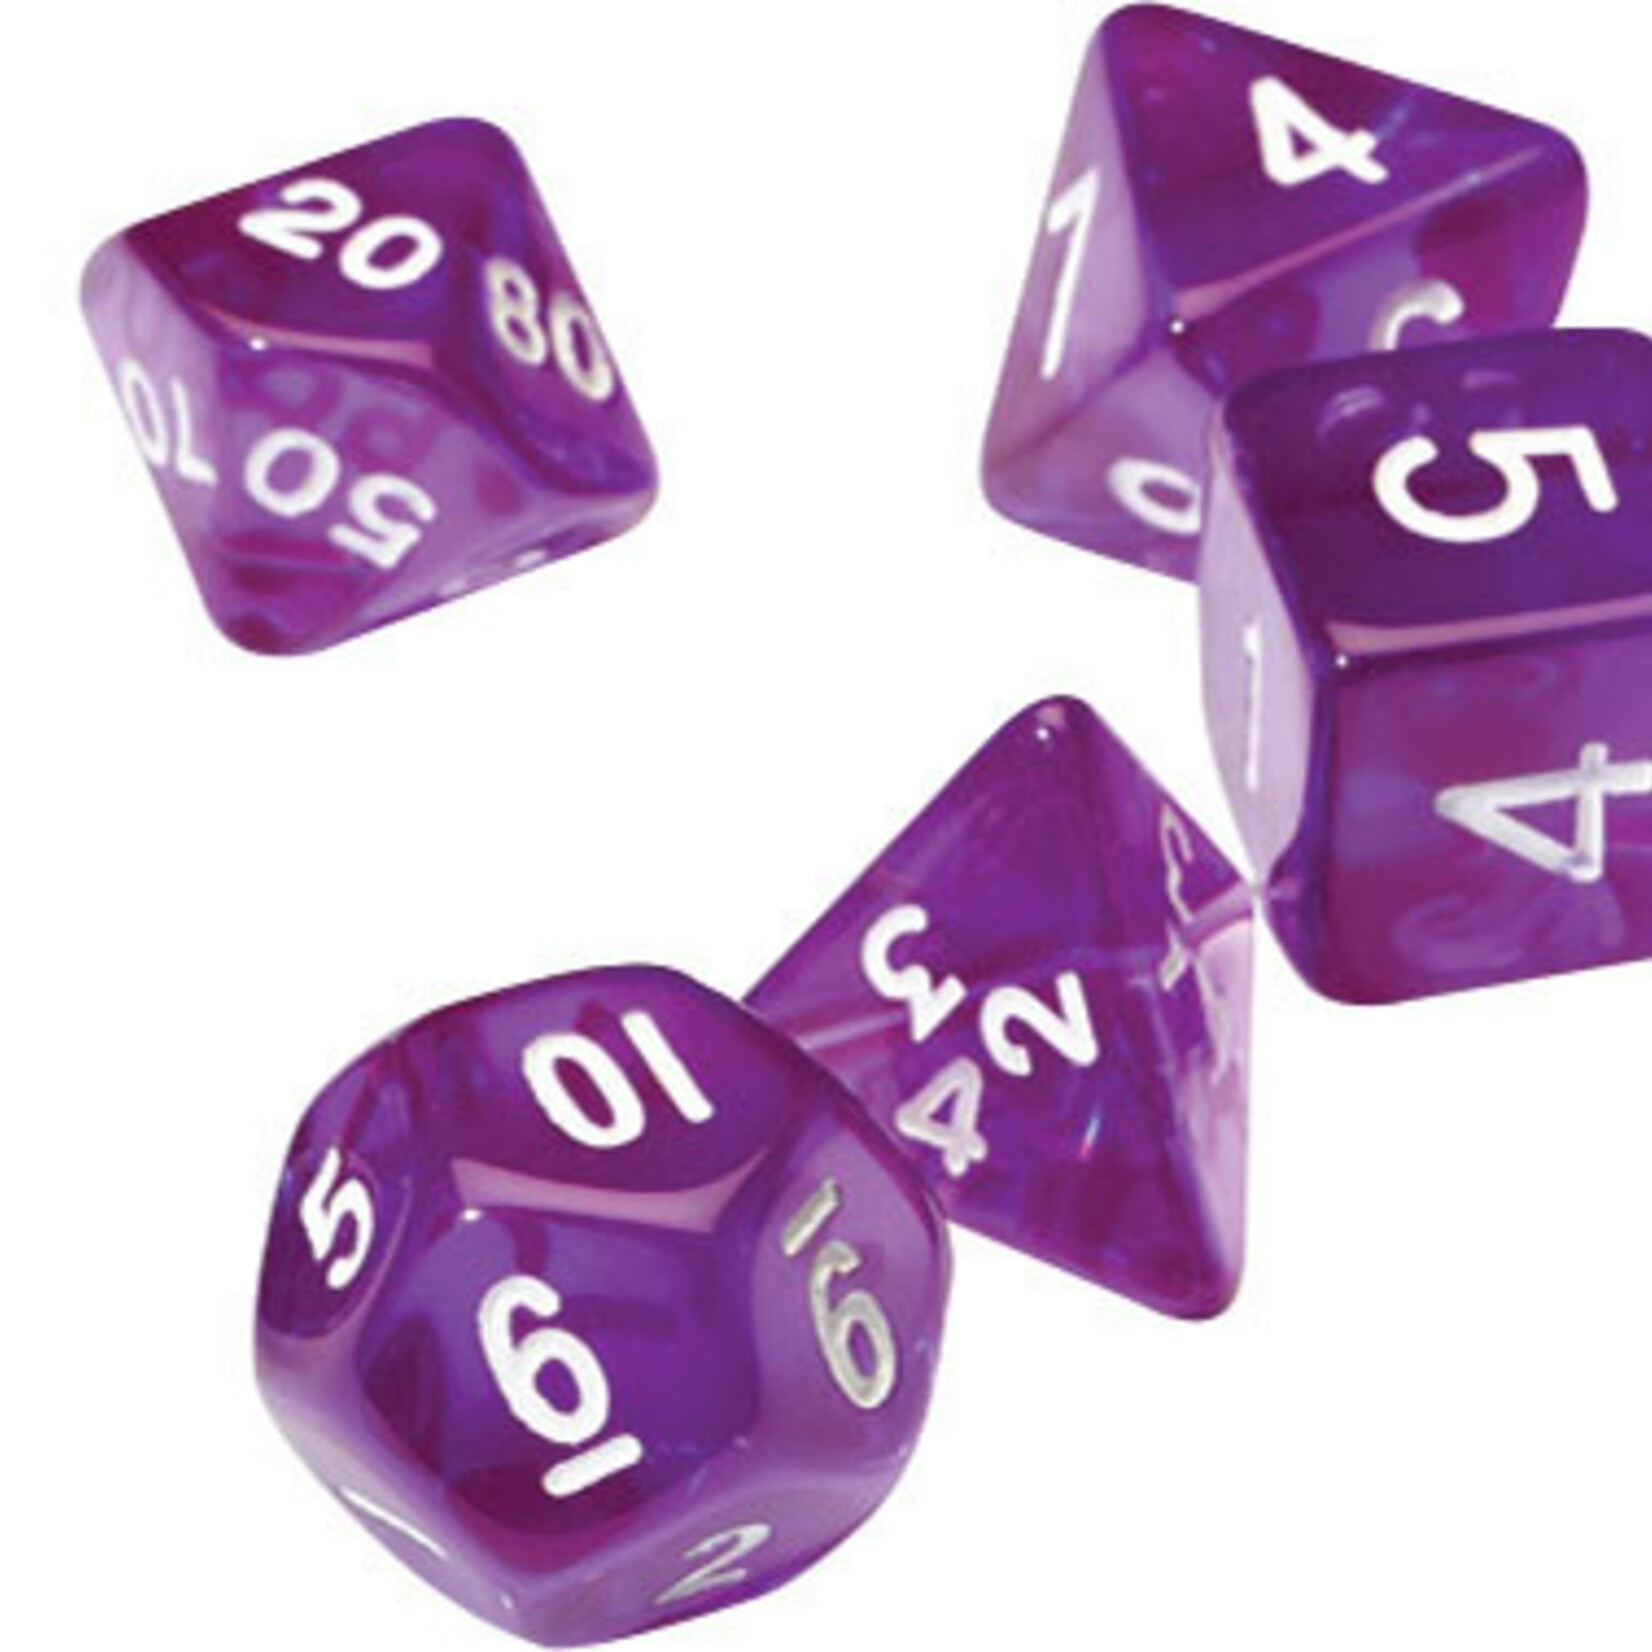 Sirius Dice RPG Dice Set (7): Translucent Purple Resin